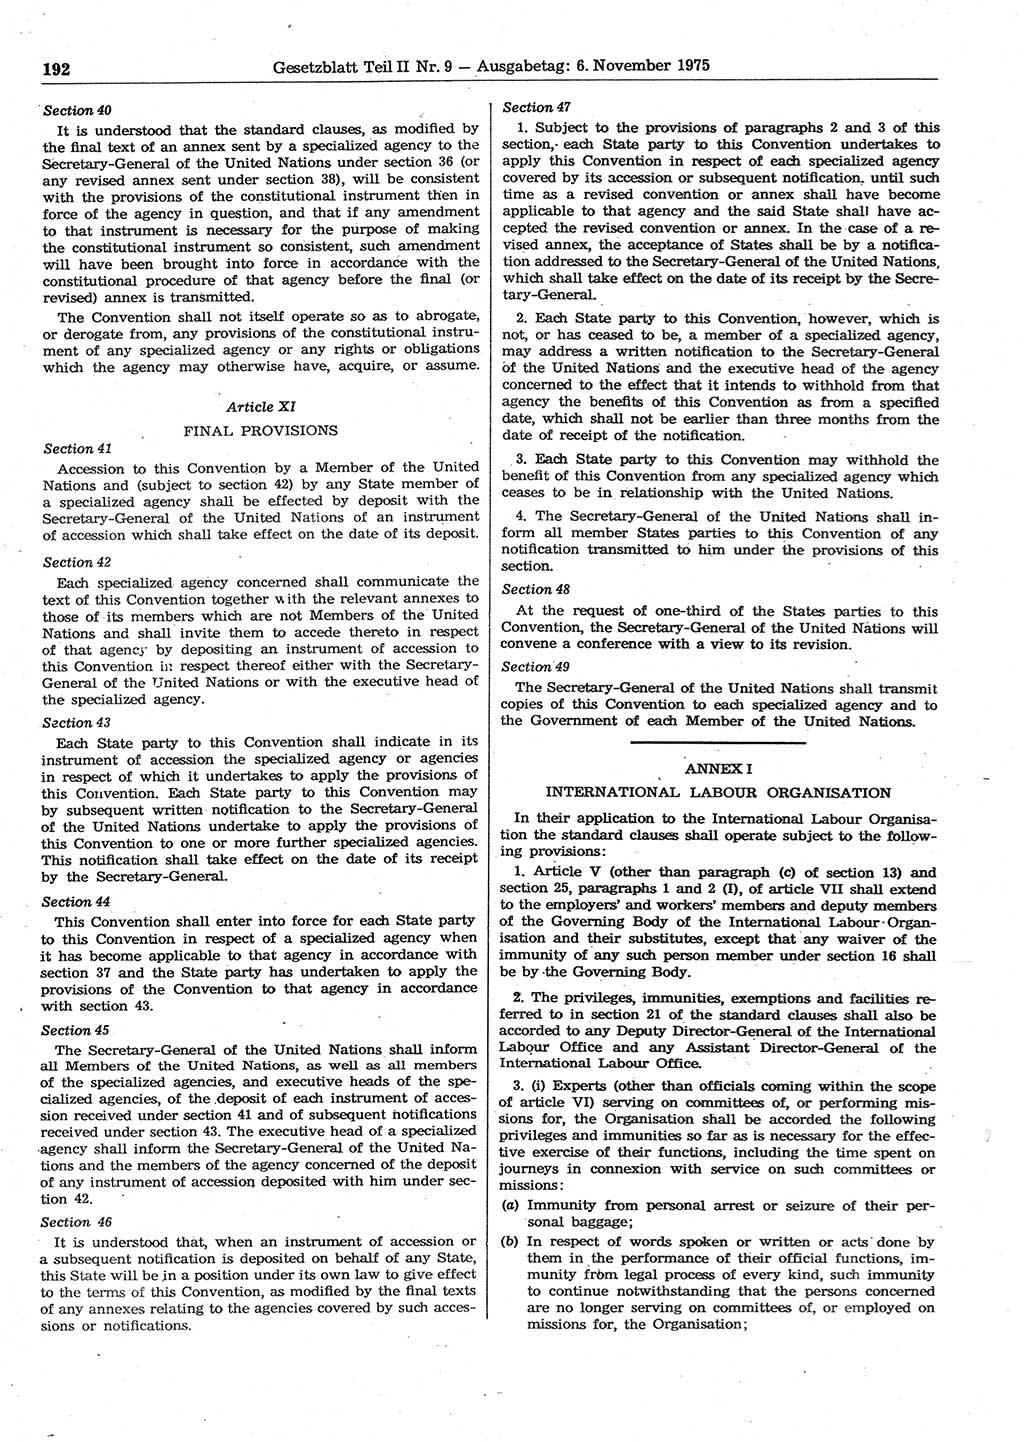 Gesetzblatt (GBl.) der Deutschen Demokratischen Republik (DDR) Teil ⅠⅠ 1975, Seite 192 (GBl. DDR ⅠⅠ 1975, S. 192)